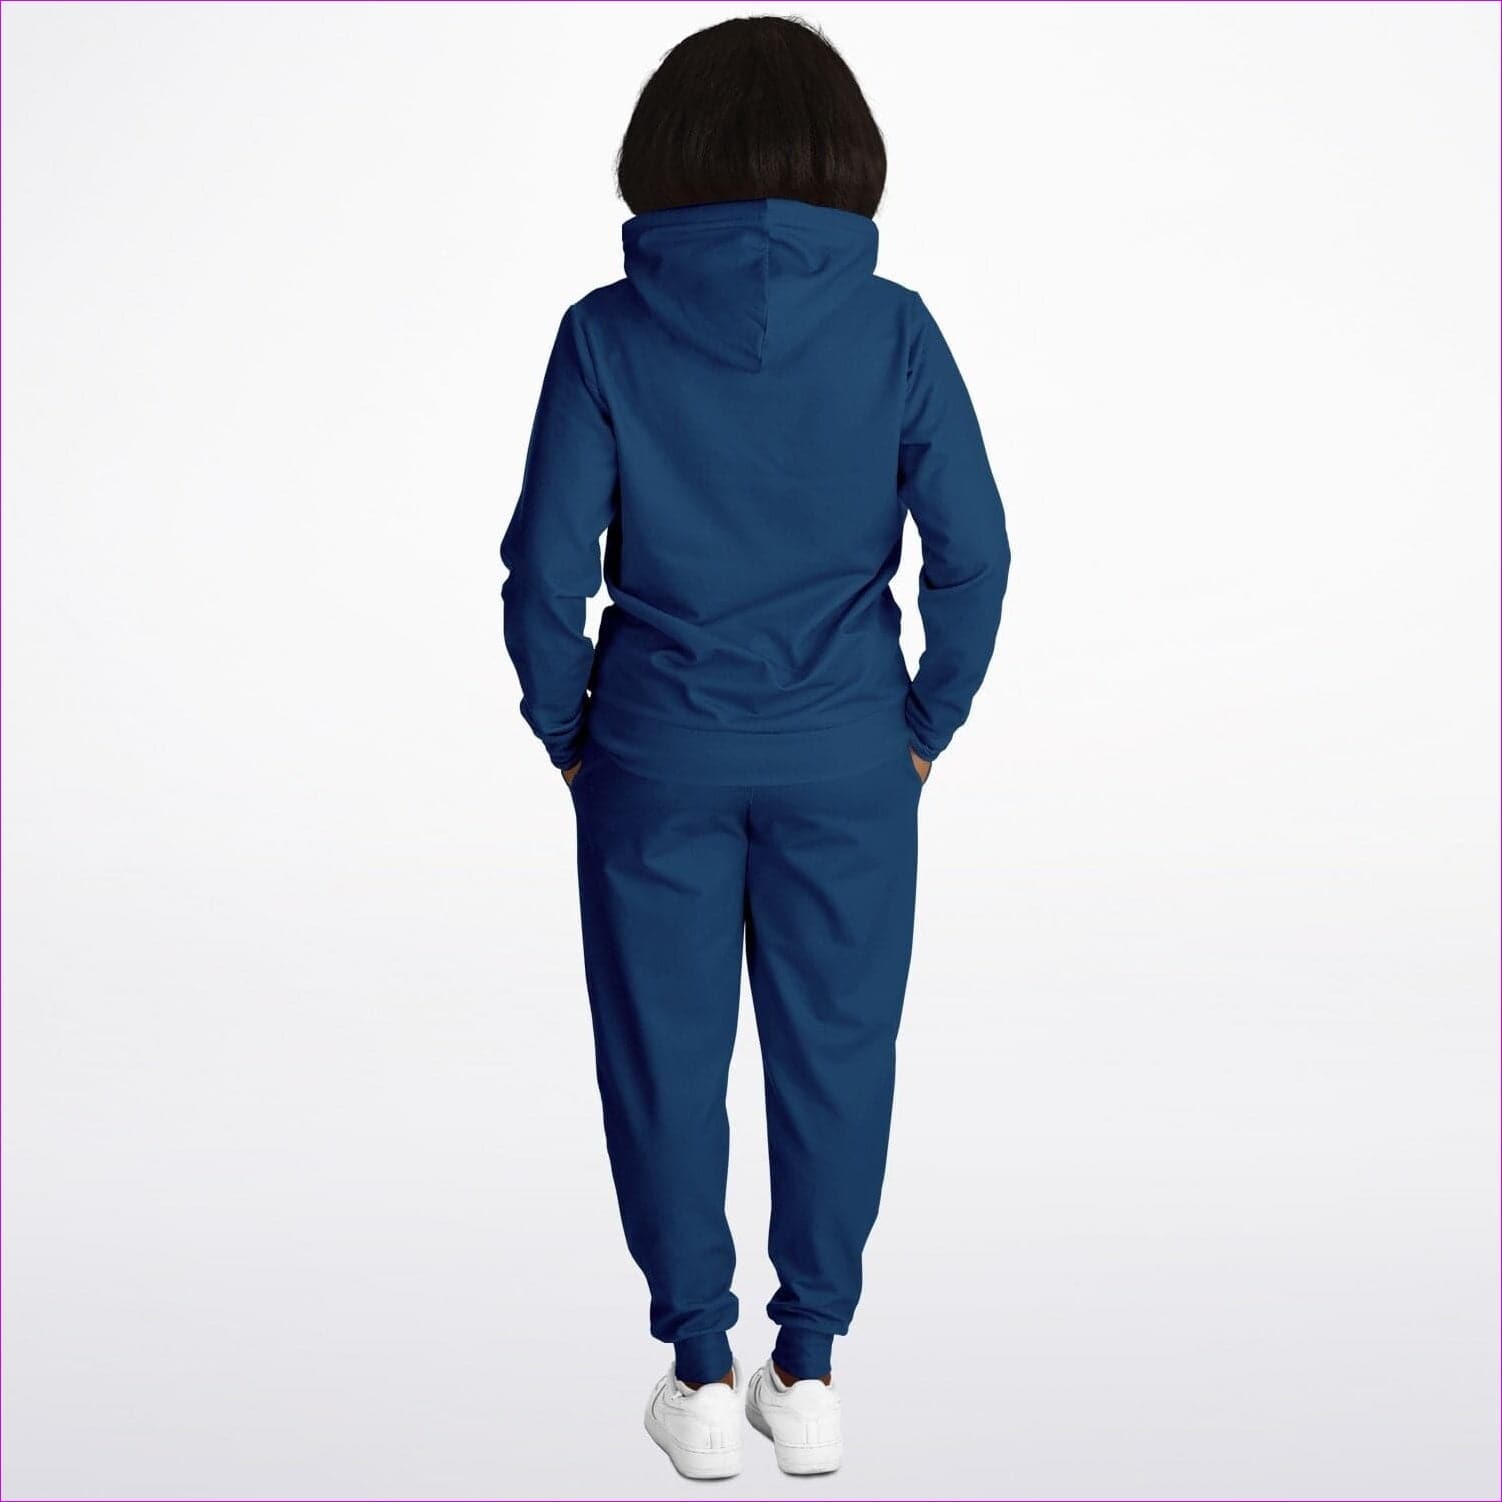 - Deity Premium Blue Athletic Jogging Suit - Athletic Hoodie & Jogger - AOP at TFC&H Co.